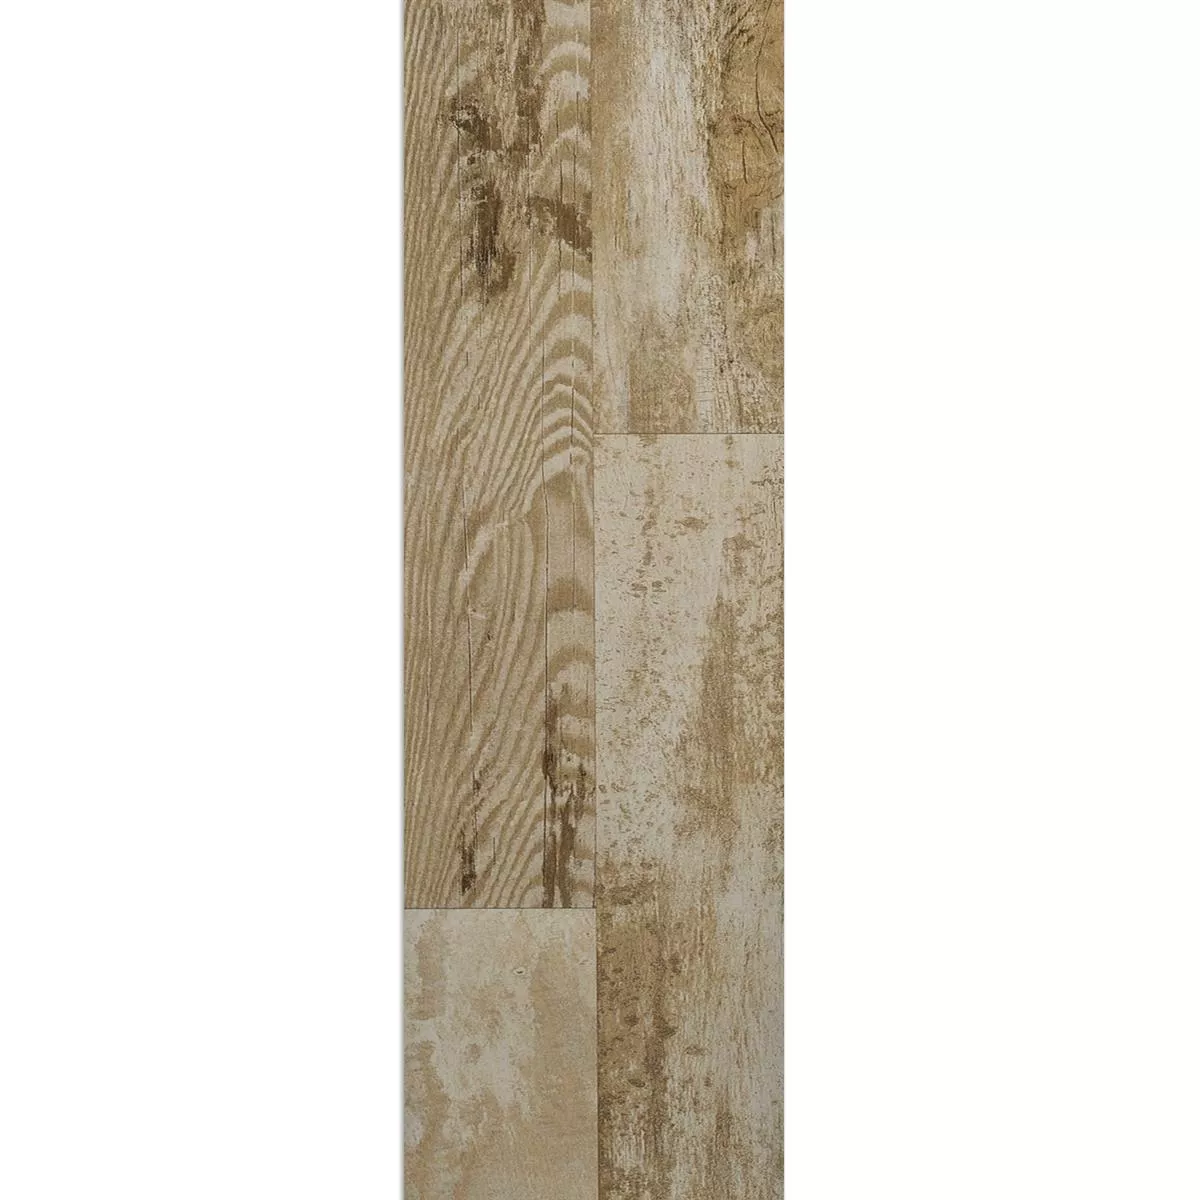 Próbka Wygląd Drewna Płytki Podłogowe Fortuna Beżowy 20x120cm